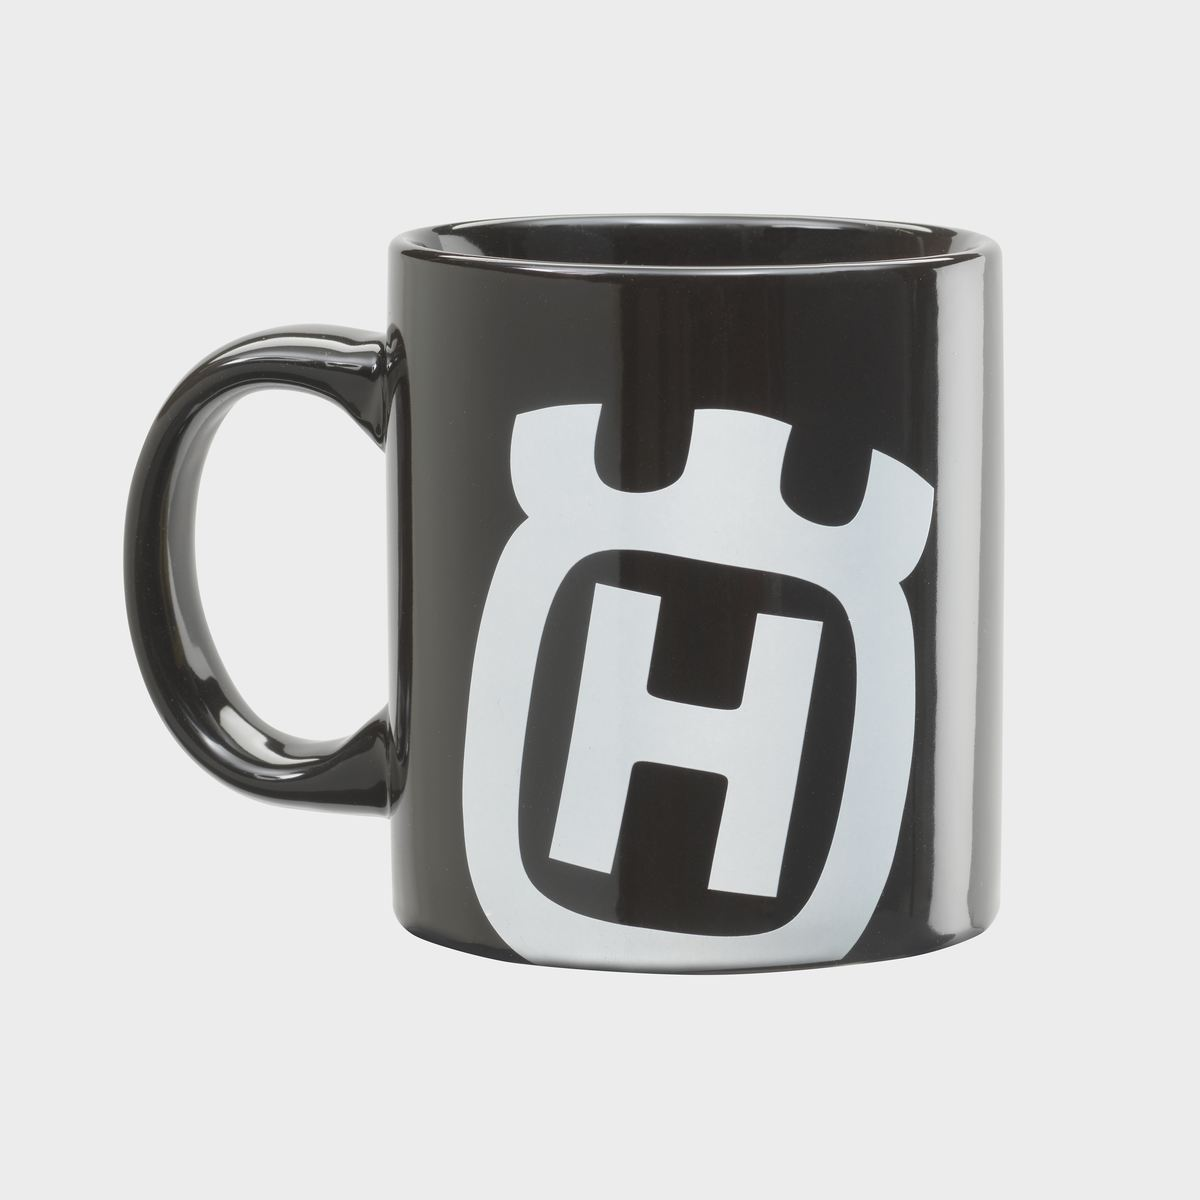 Rockstar Husqvarna Coffee Mug